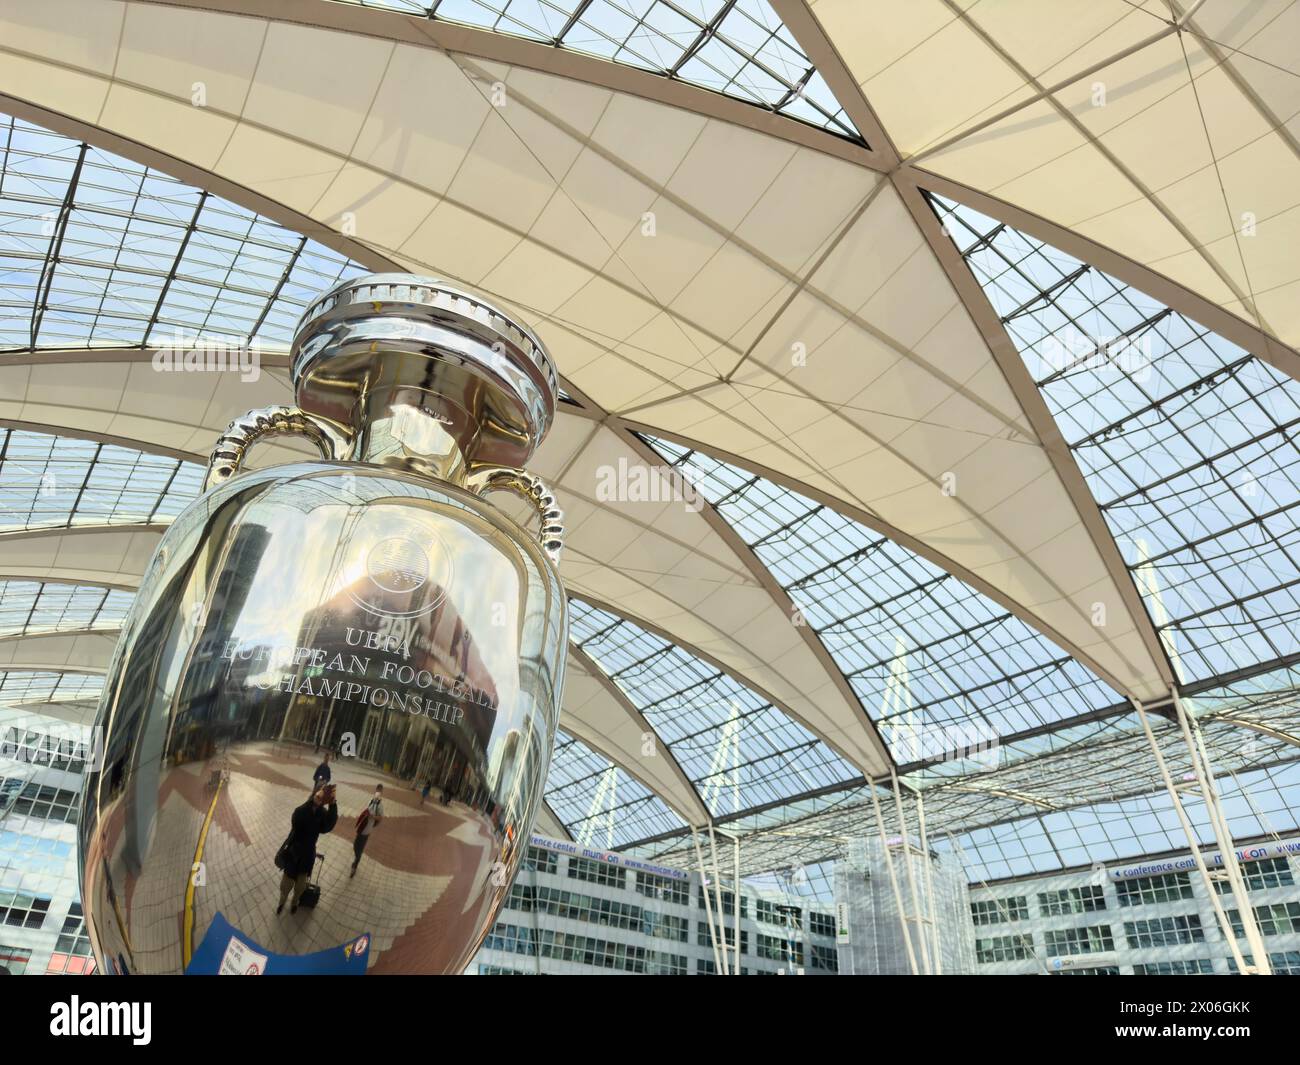 Trophée des Championnats d'Europe de football de l'UEFA à l'aéroport Franz-Joseph-Strauss le 23 mars 2024 à Munich, Hallbergmoos, Allemagne. Photographe : ddp images / STAR-images Banque D'Images